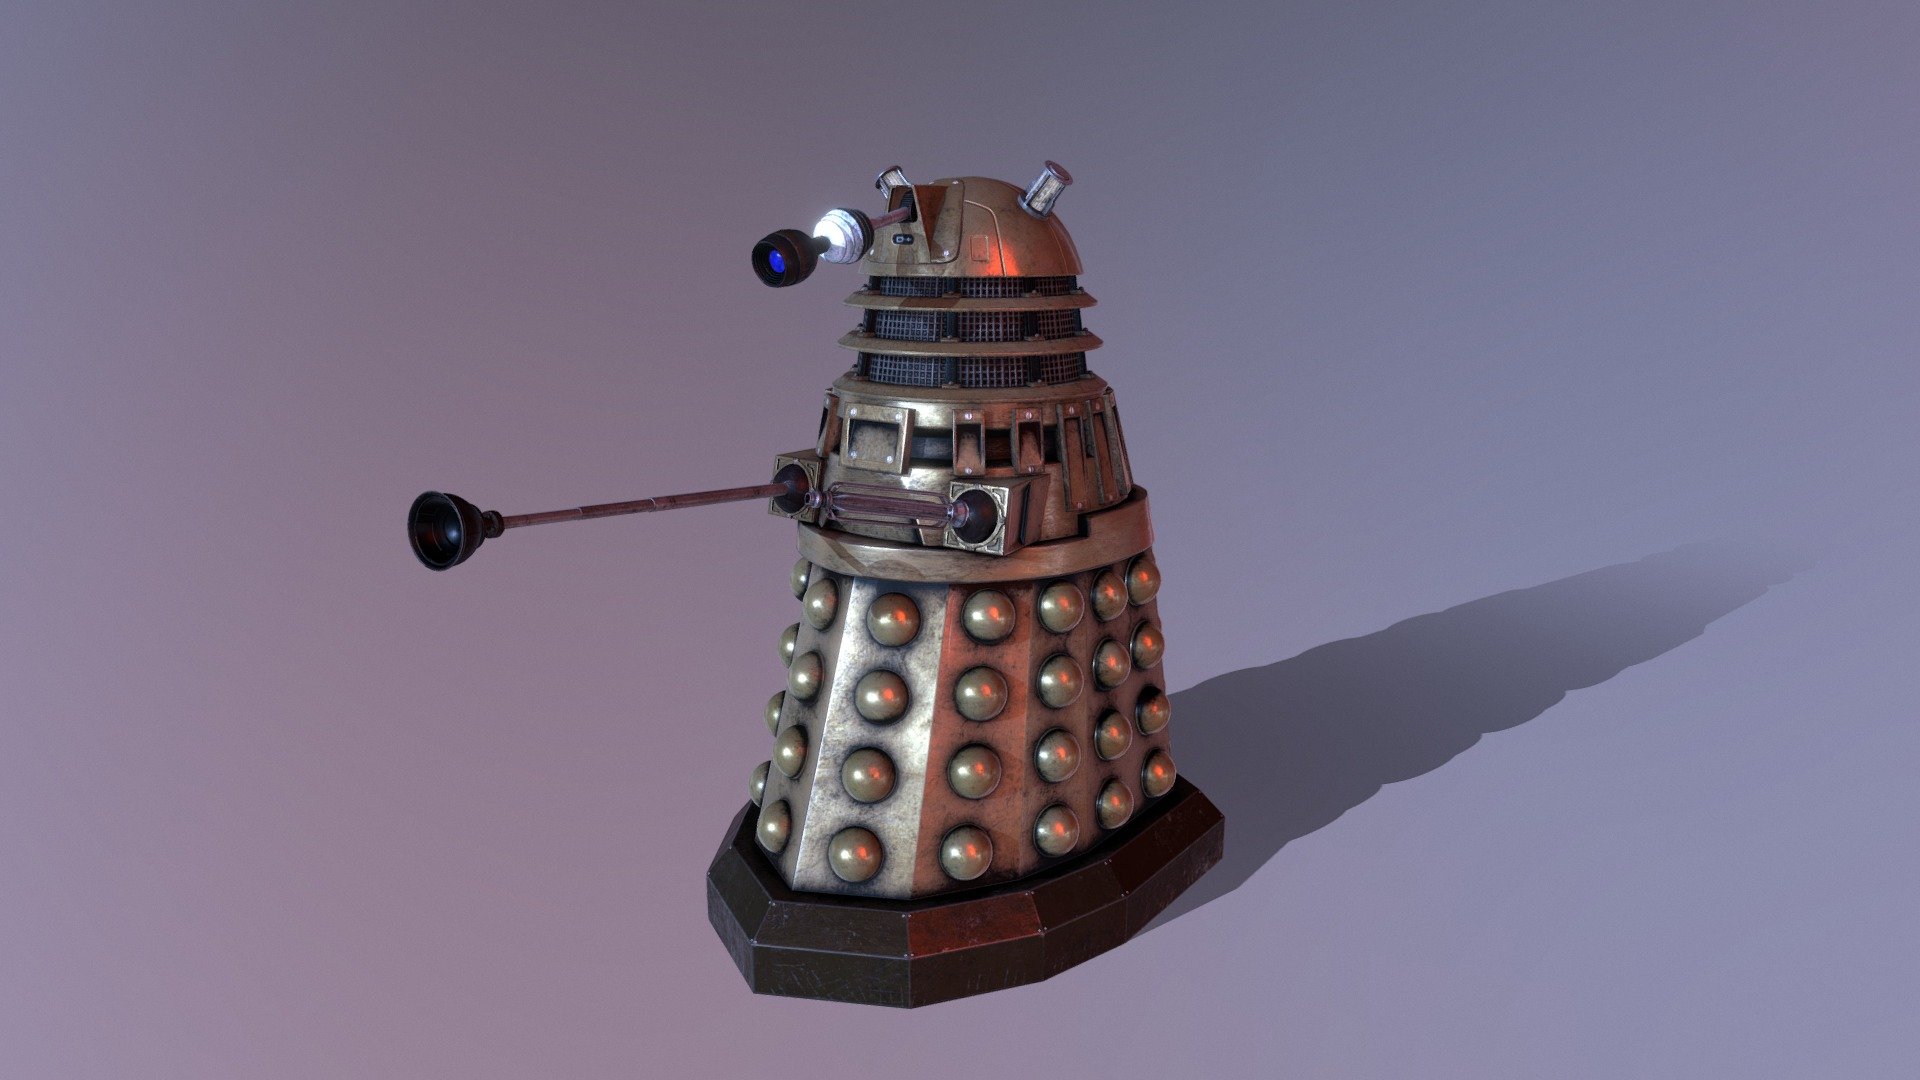 Dalek Download Free 3d Model By A Shevchuk Alex Shevchuk [96c6bfa] Sketchfab